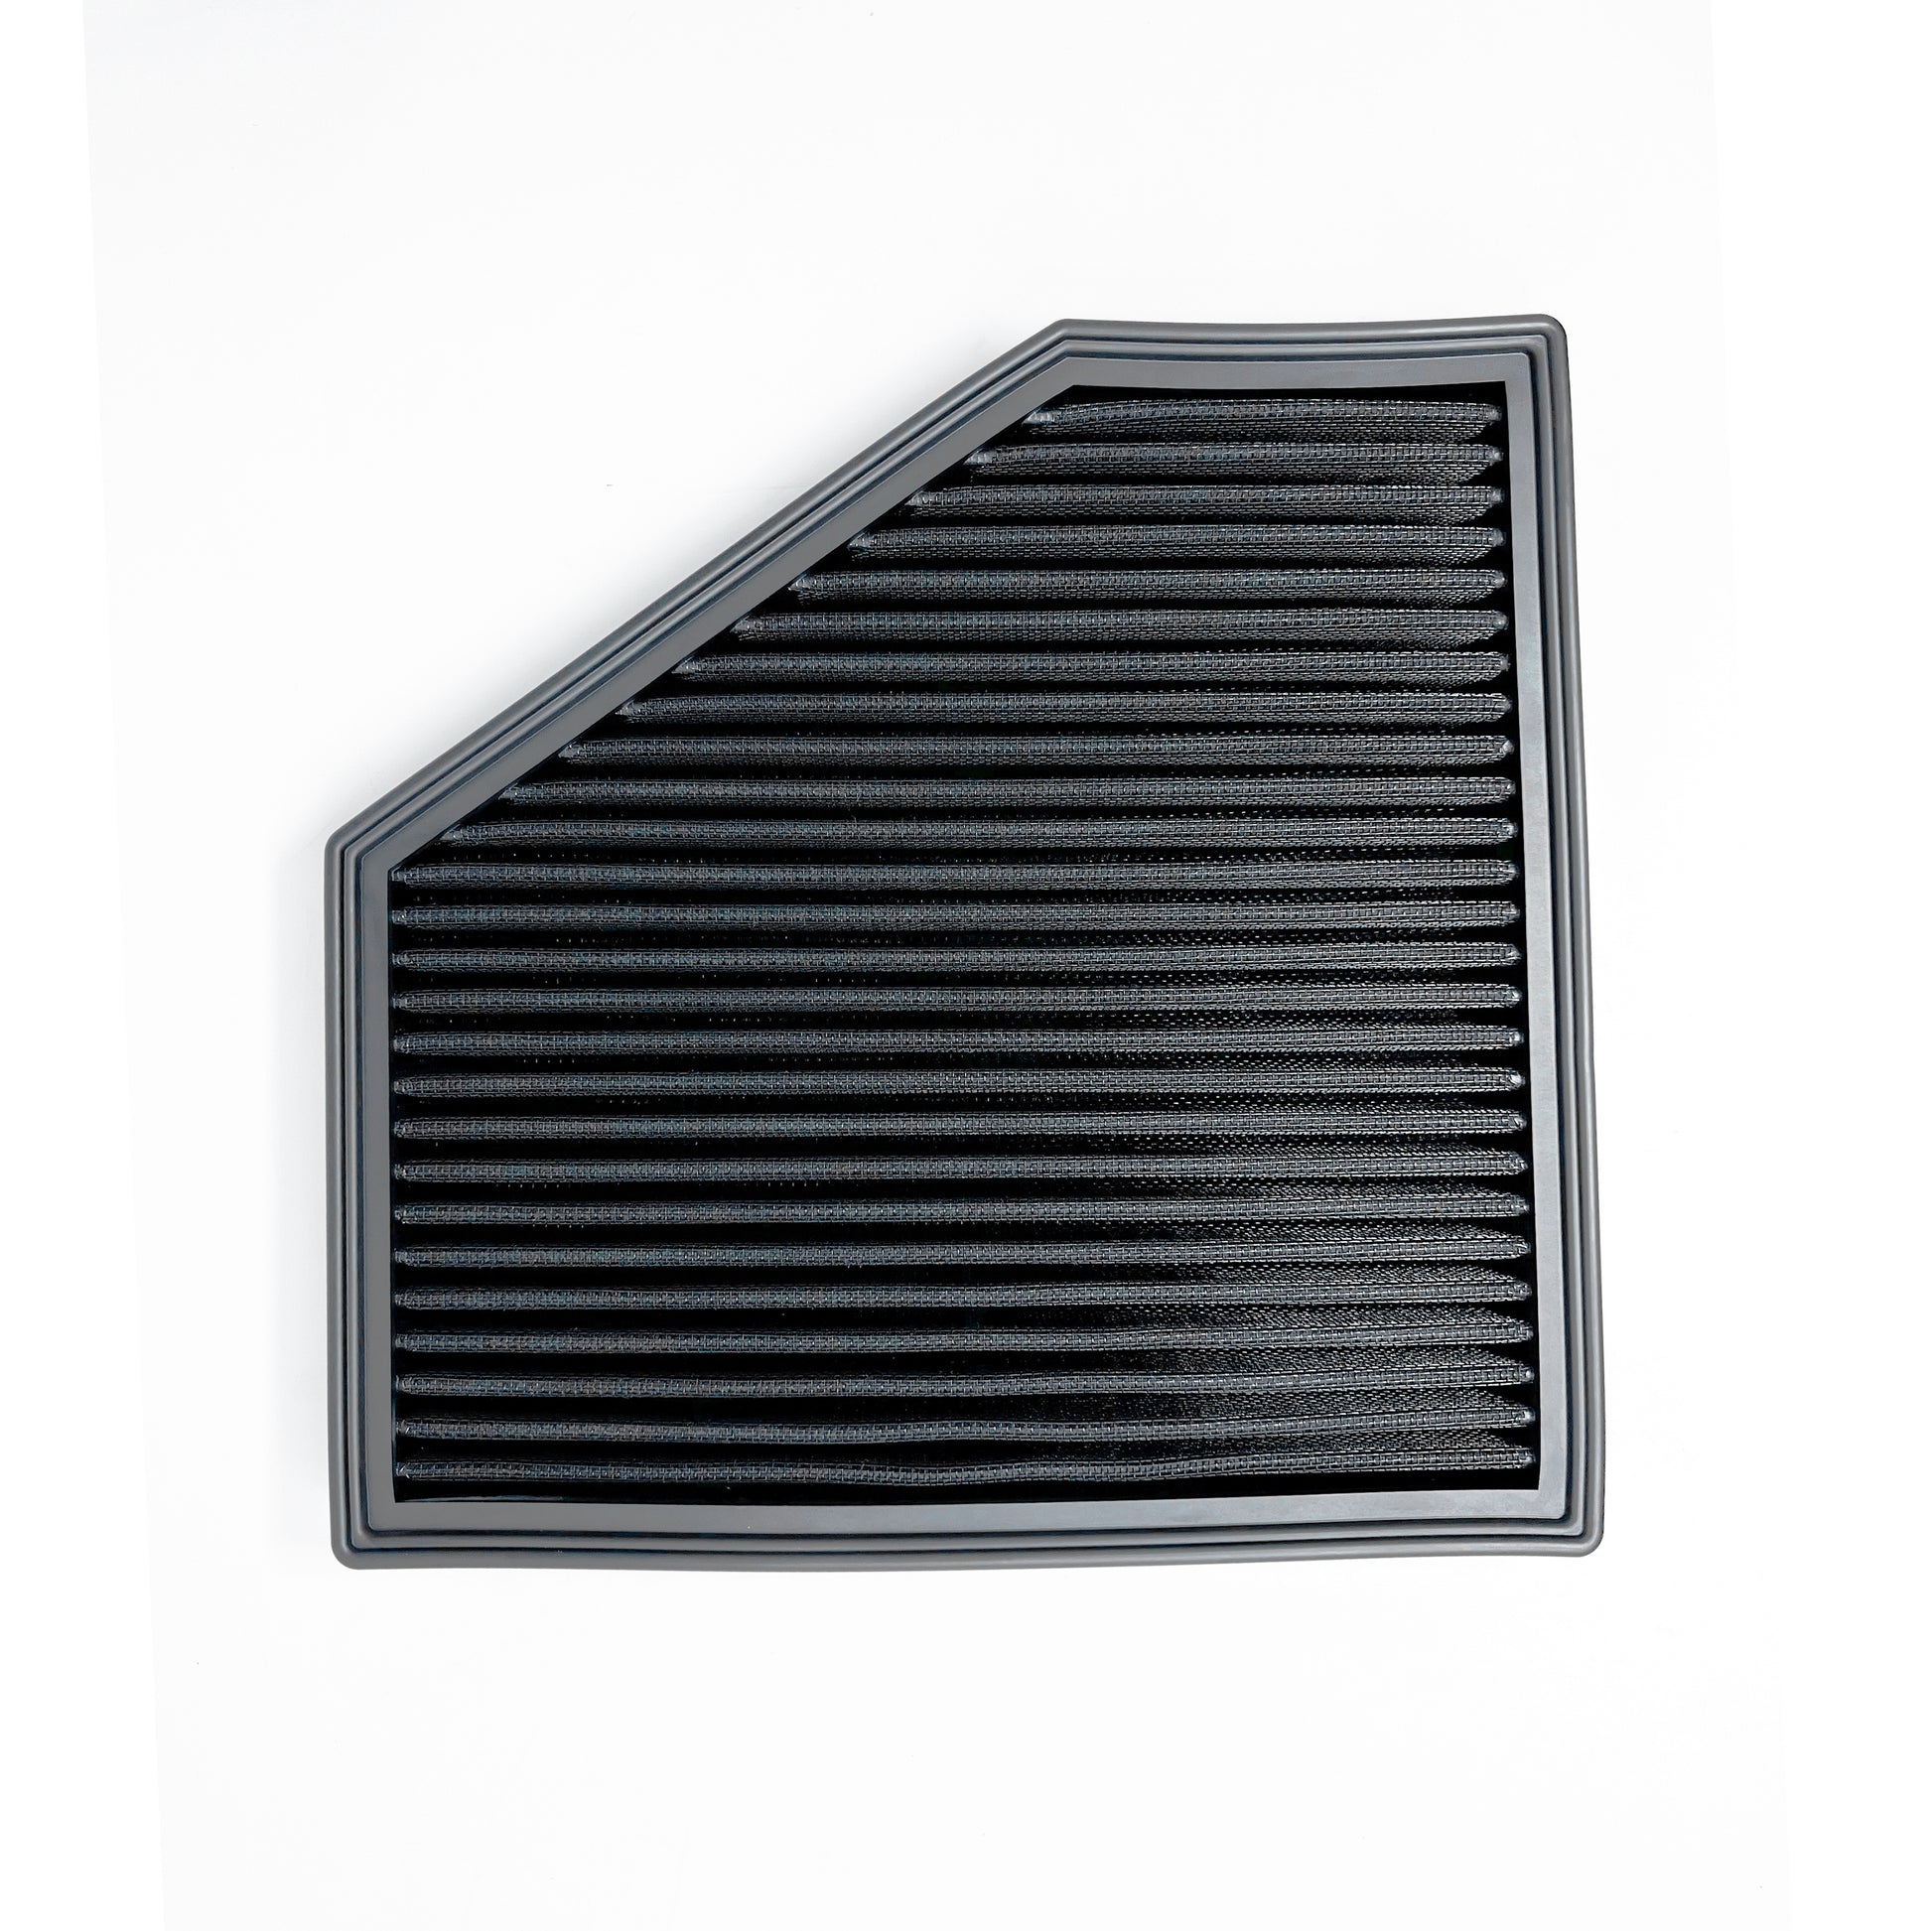 Masata B48 B58 F20 F22 F30 F32 Panel Air Dry Filter (Inc. 125i, M240ix, 330i & 440ix)